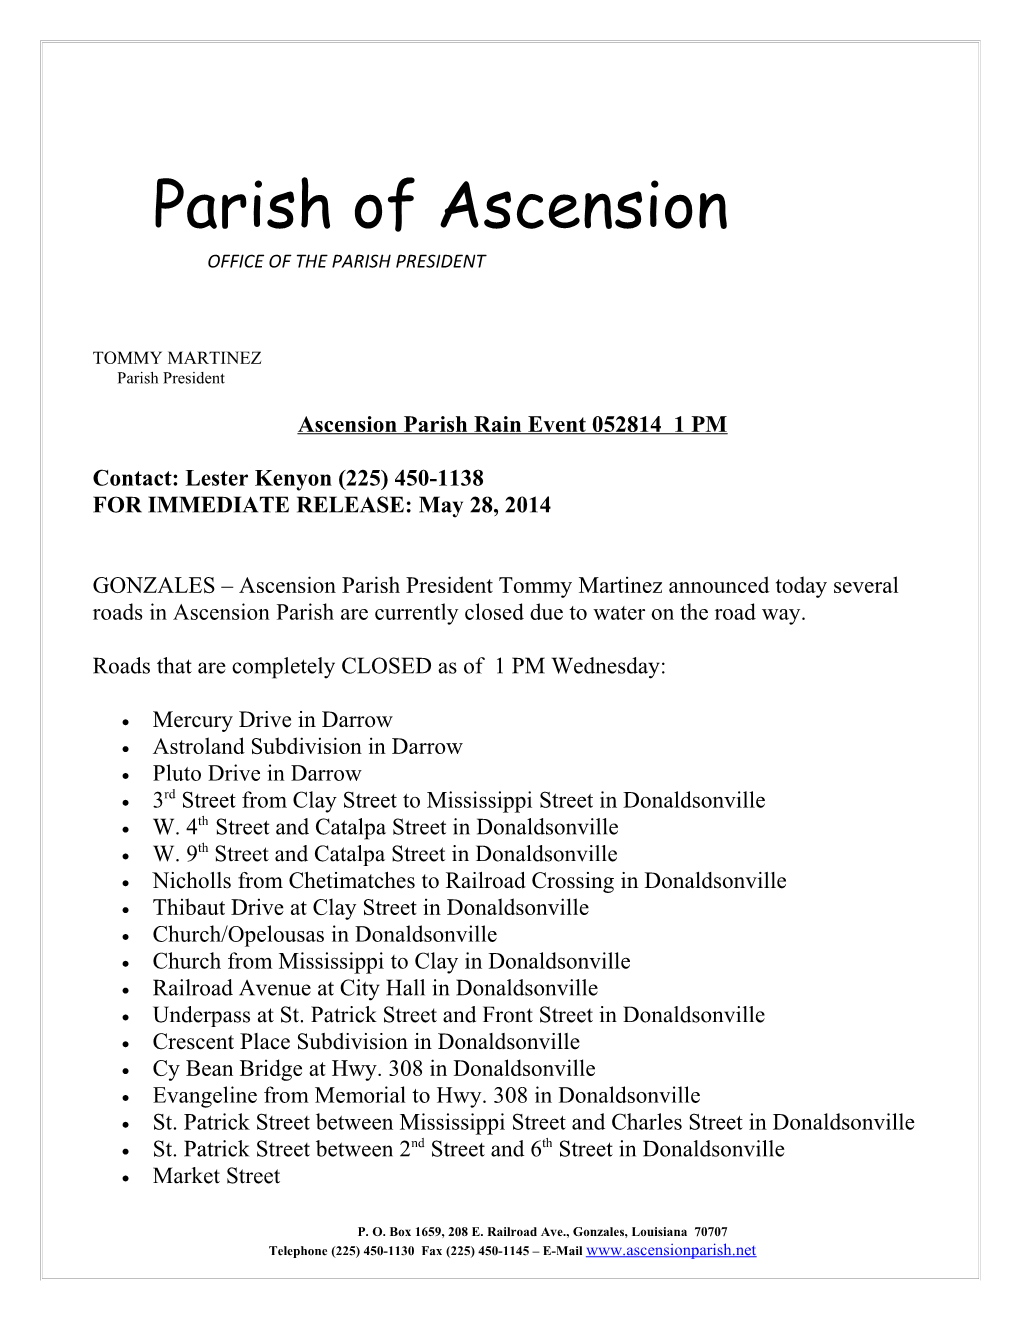 Ascension Parish Rain Event 052814 1 PM